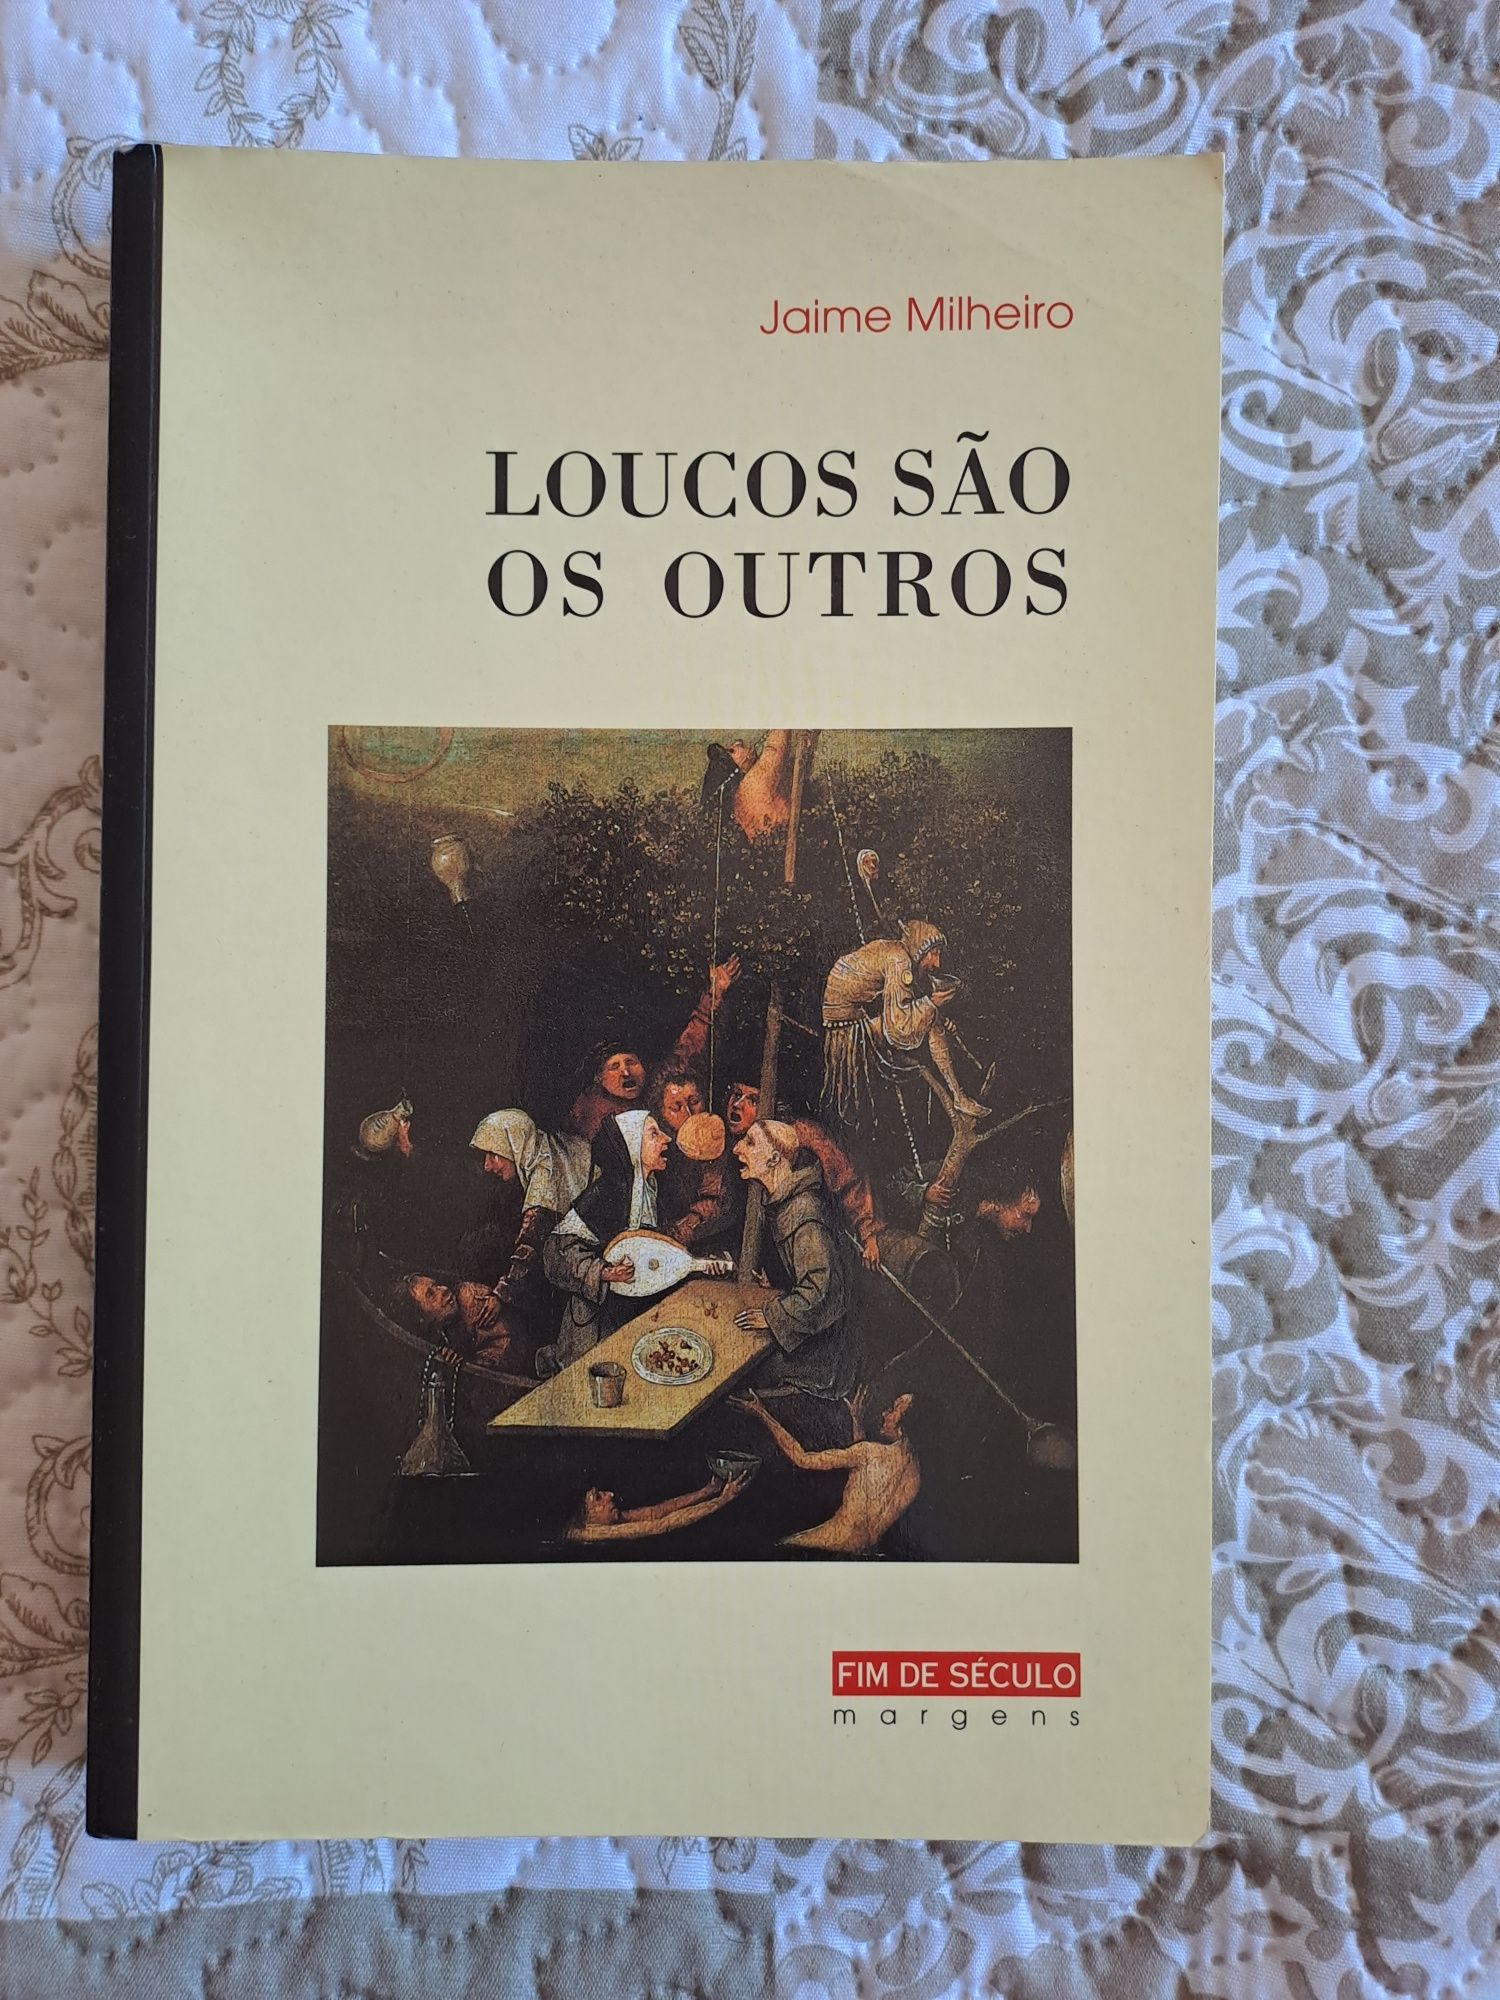 Livro "Os Loucos são os Outros" de Jaime Milheiro